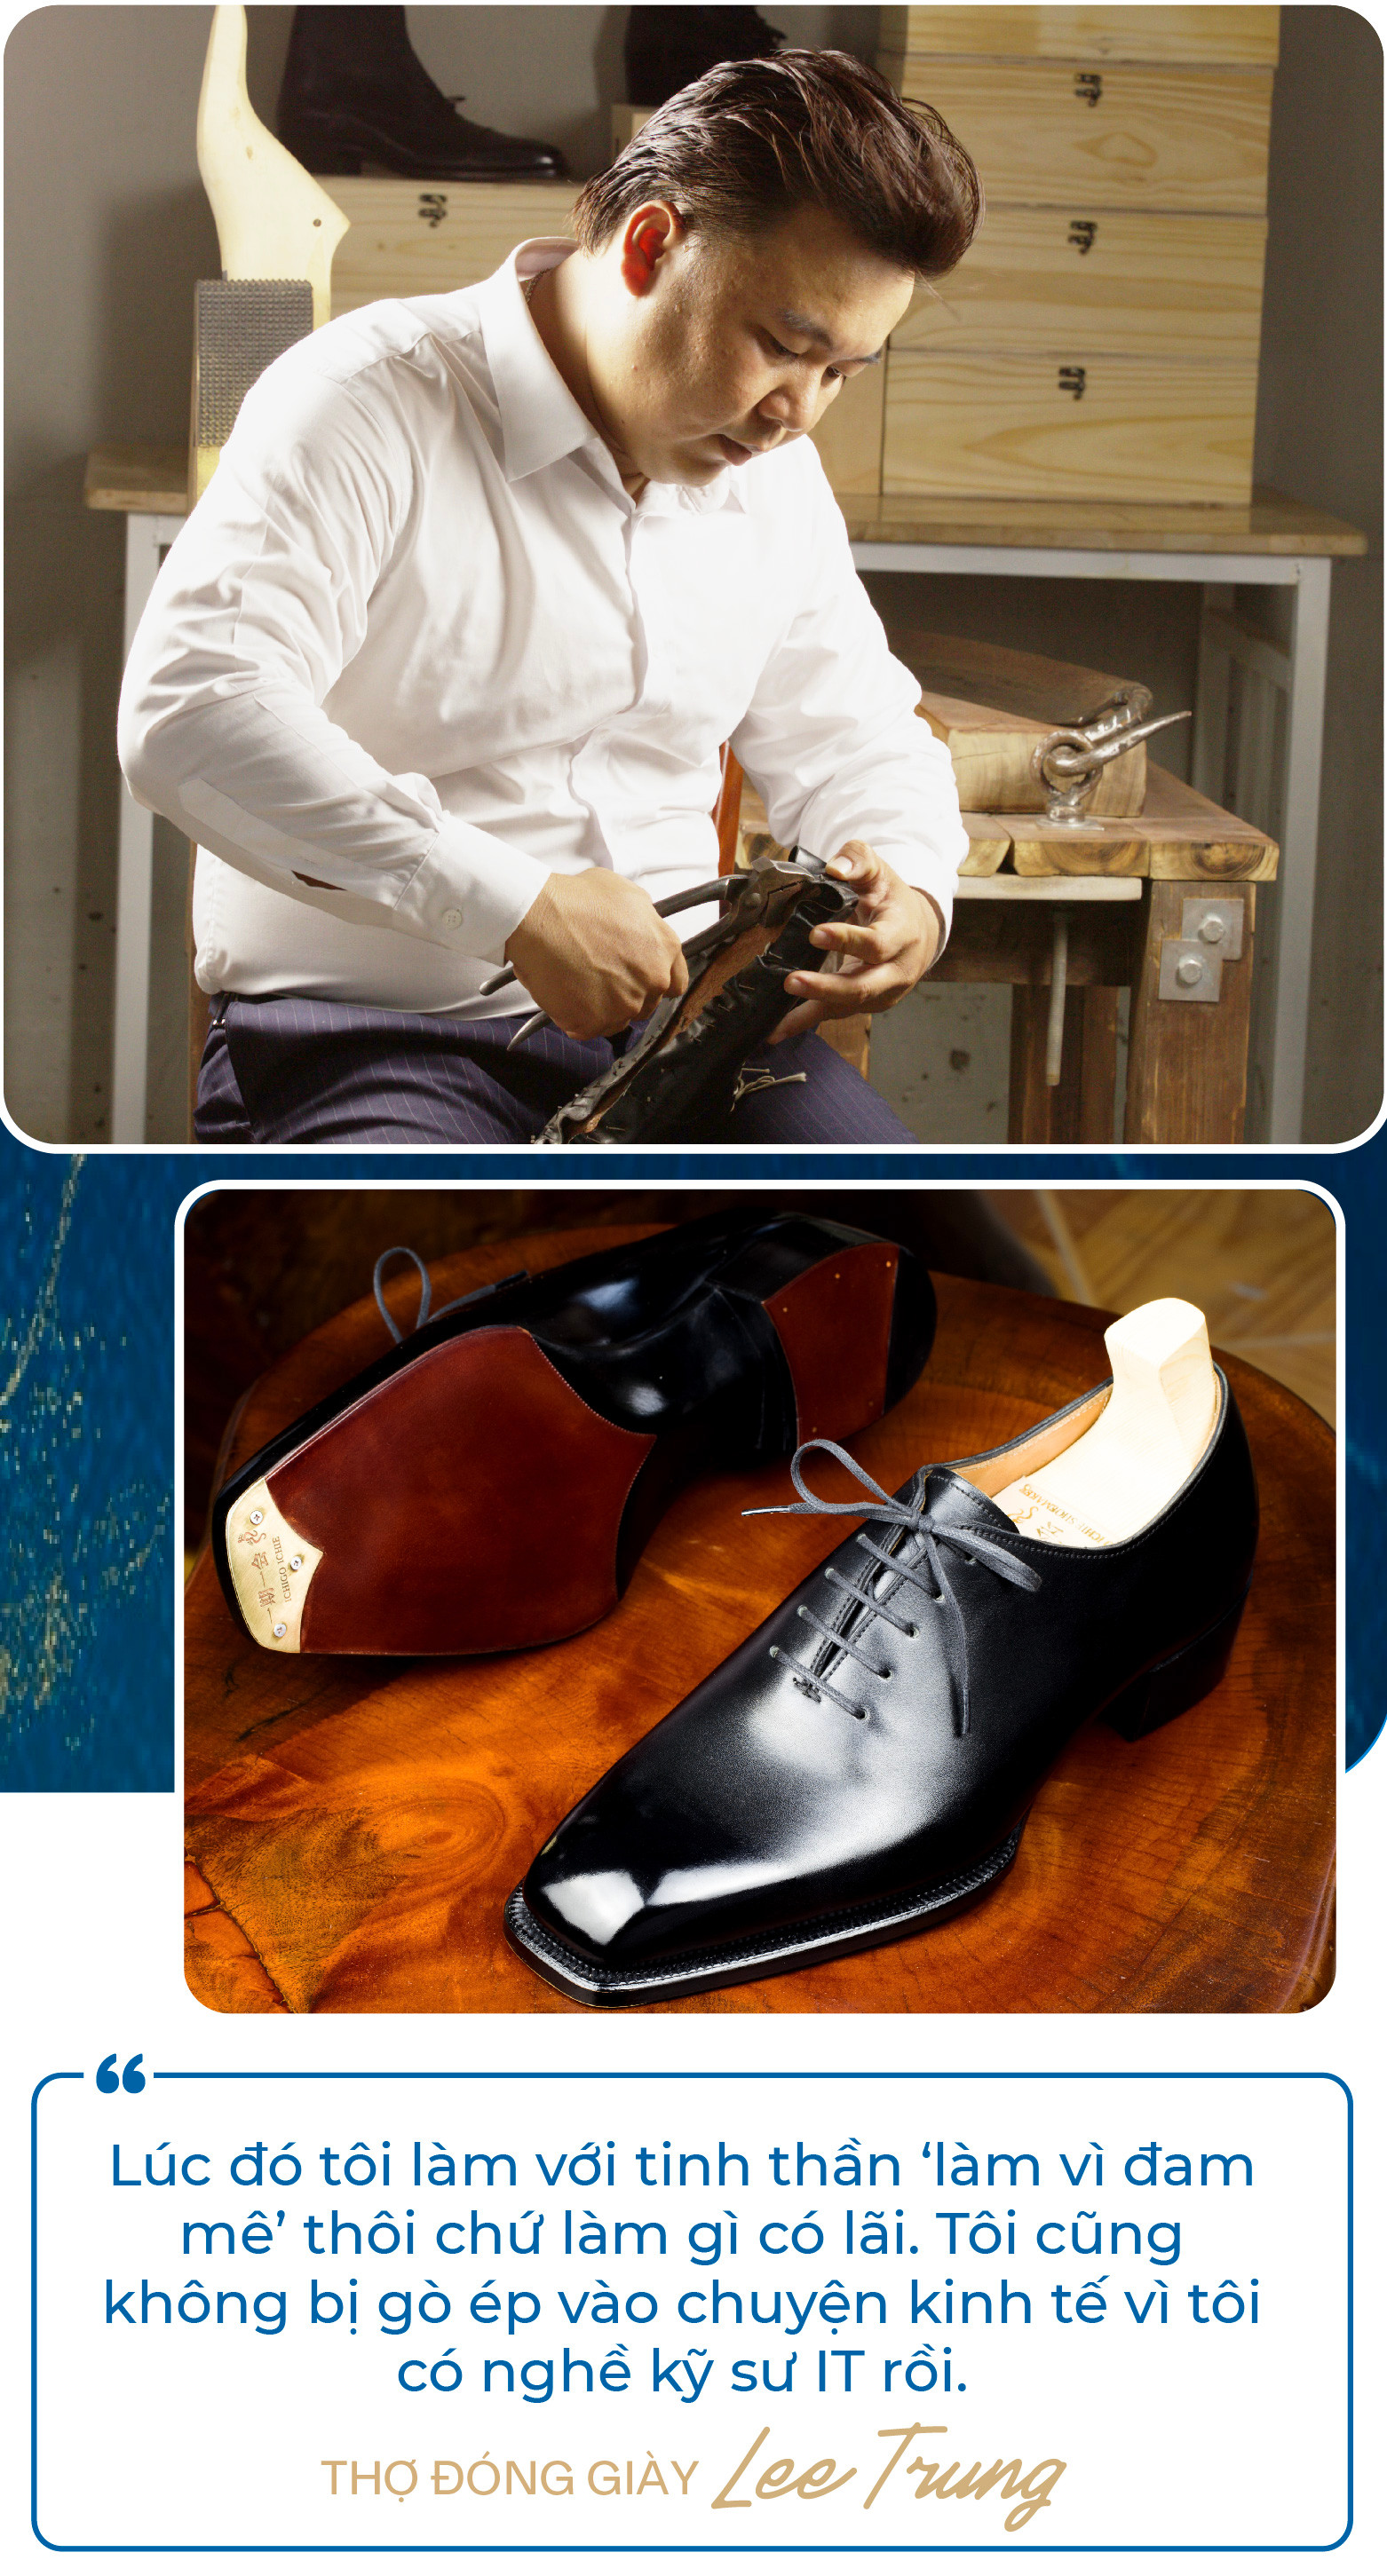 Chàng trai bỏ việc kỹ sư lương nghìn USD để làm thợ đóng giày: Không quảng cáo rầm rộ, giày giá nghìn USD vẫn “đắt hàng”, khẳng định làm vì đam mê - Ảnh 5.